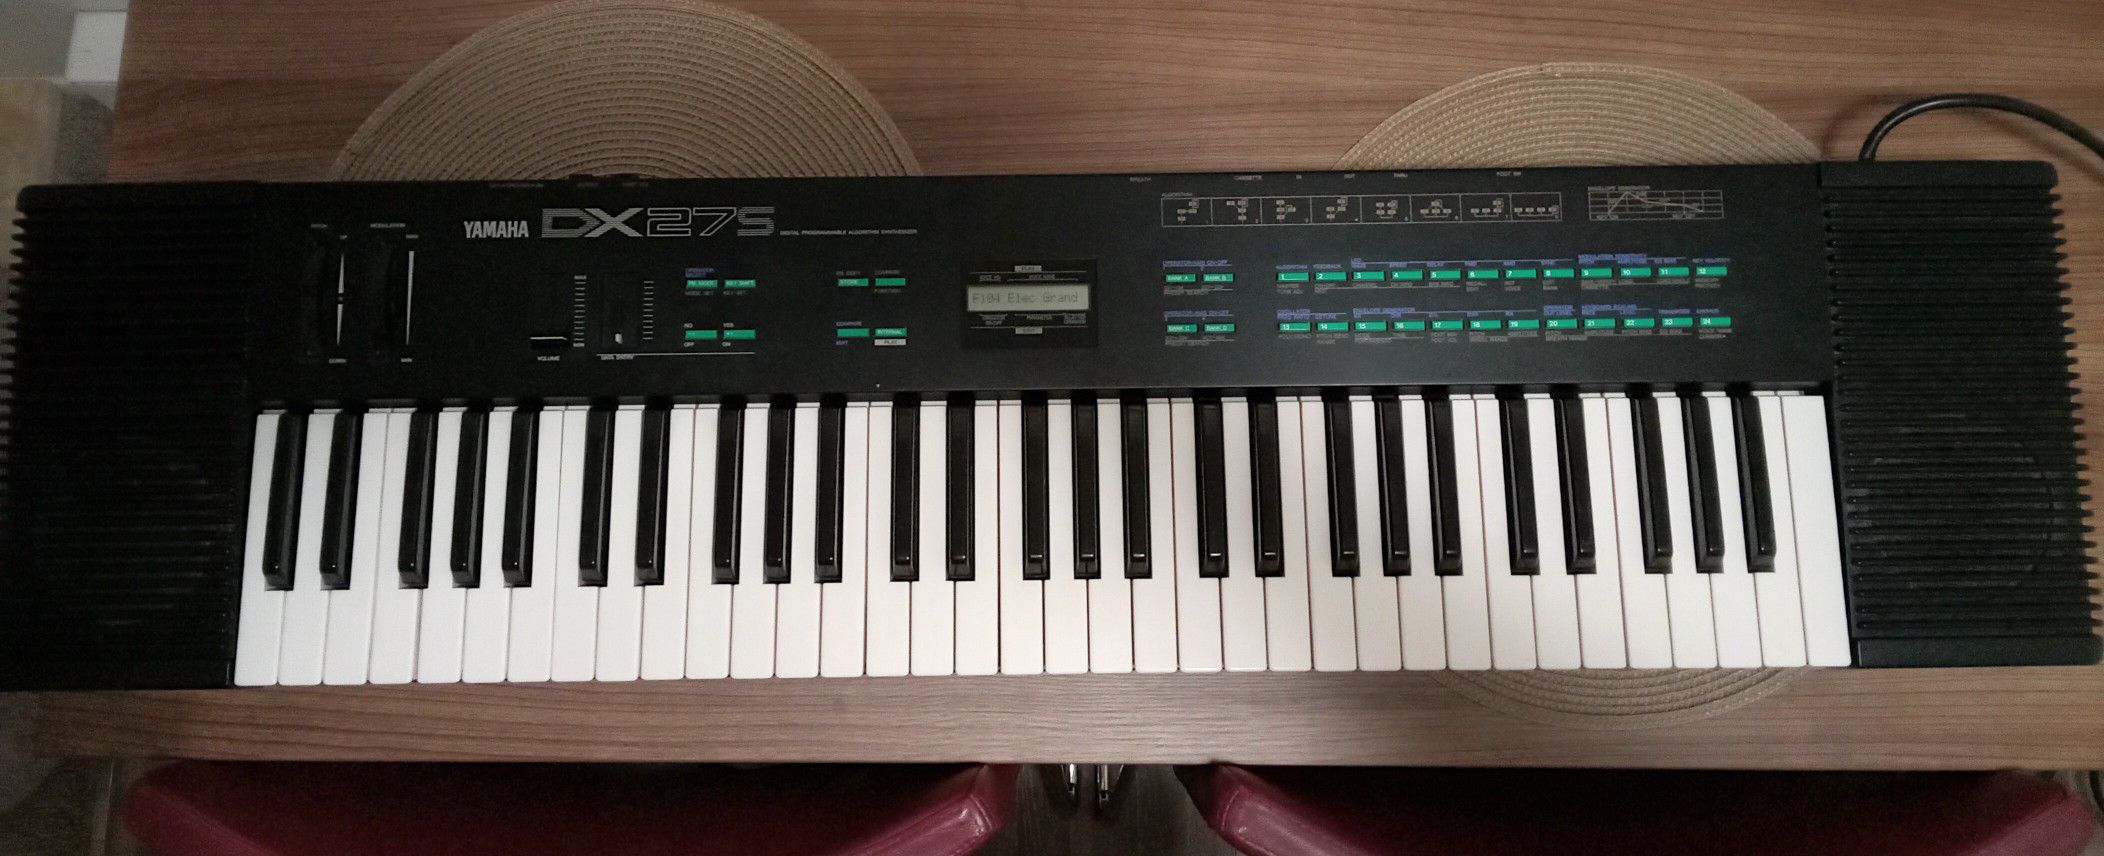 Yamaha DX27S Keyboard Synthesizer 1986